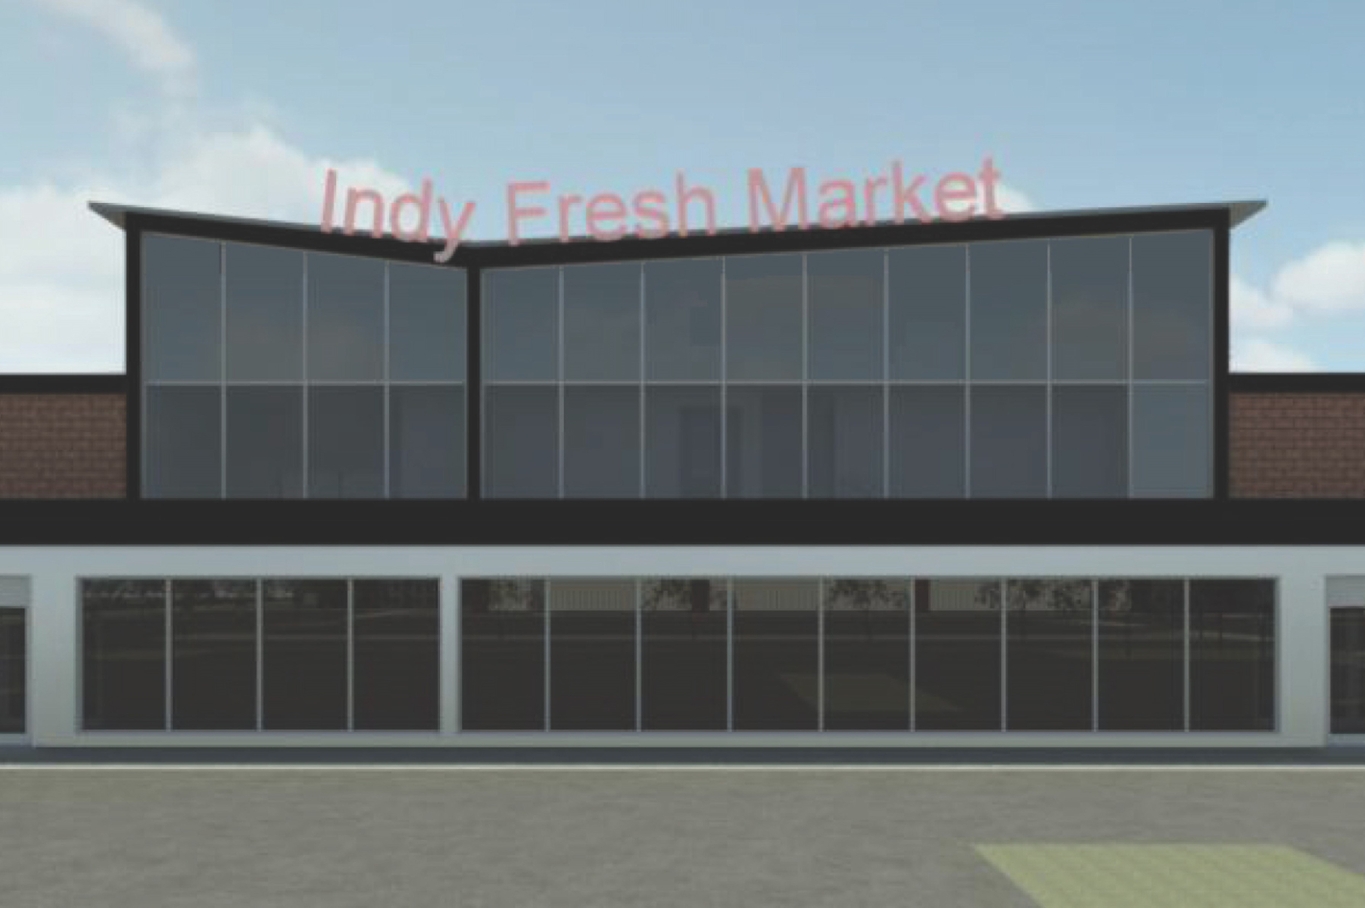 Indy Fresh Market